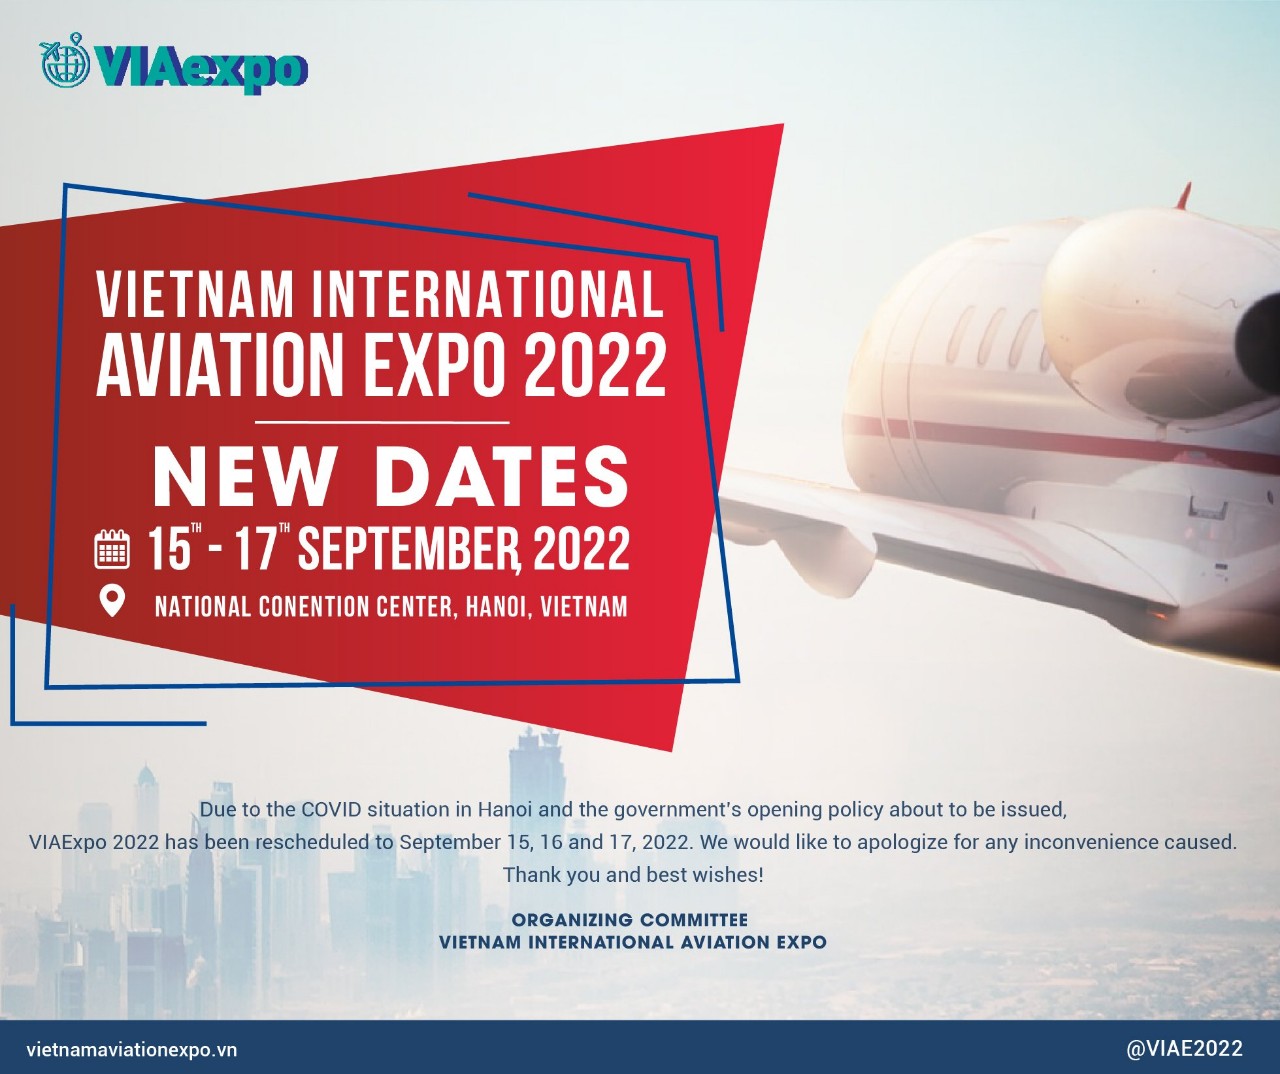 Triển lãm Hàng không Việt Nam - Via Expo 2022 tại Hà Nội